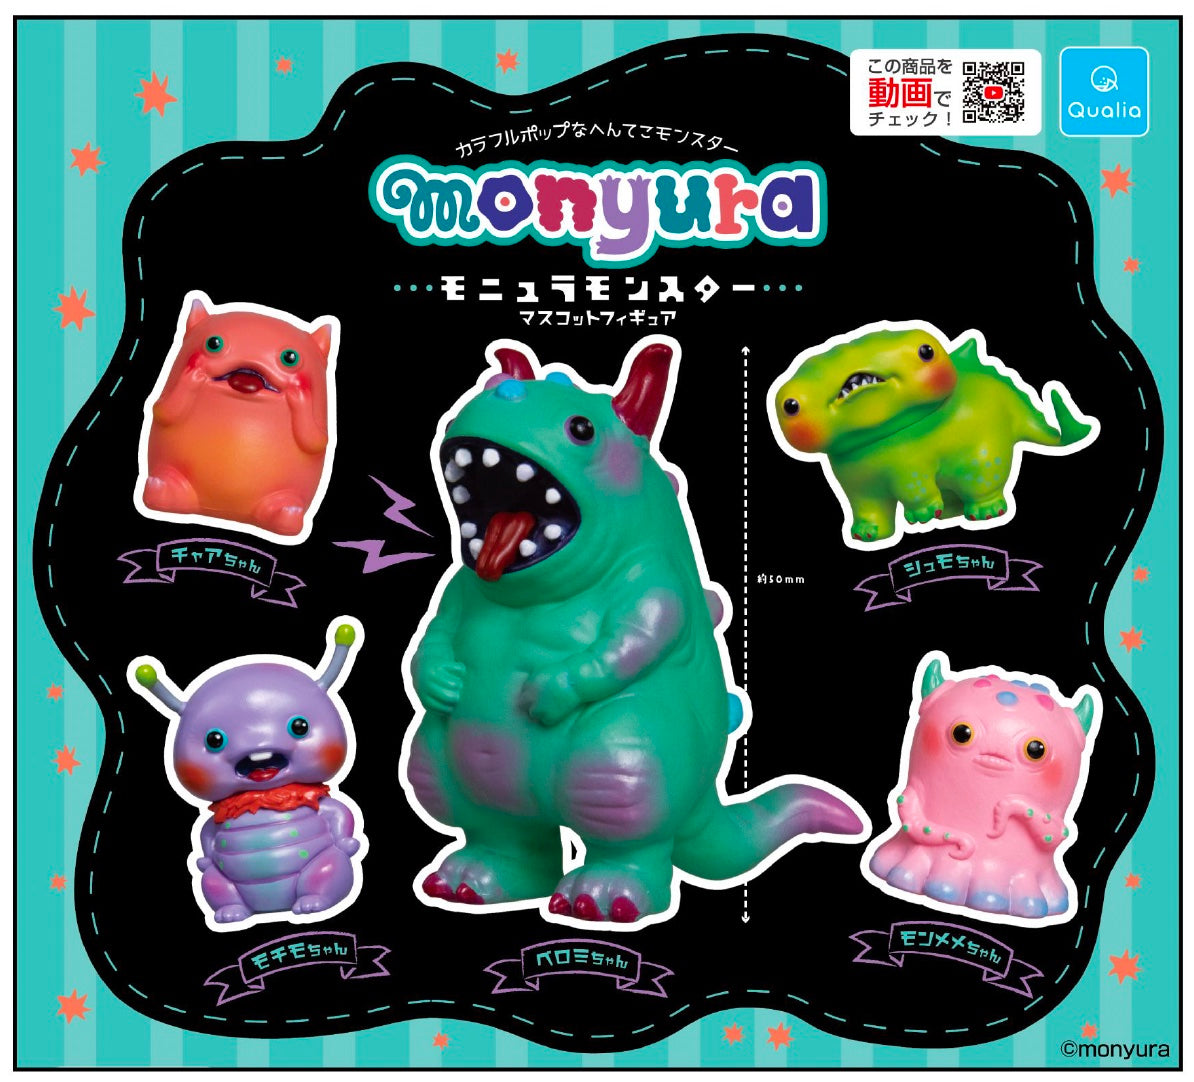 Monyura Monster Gatcha Series